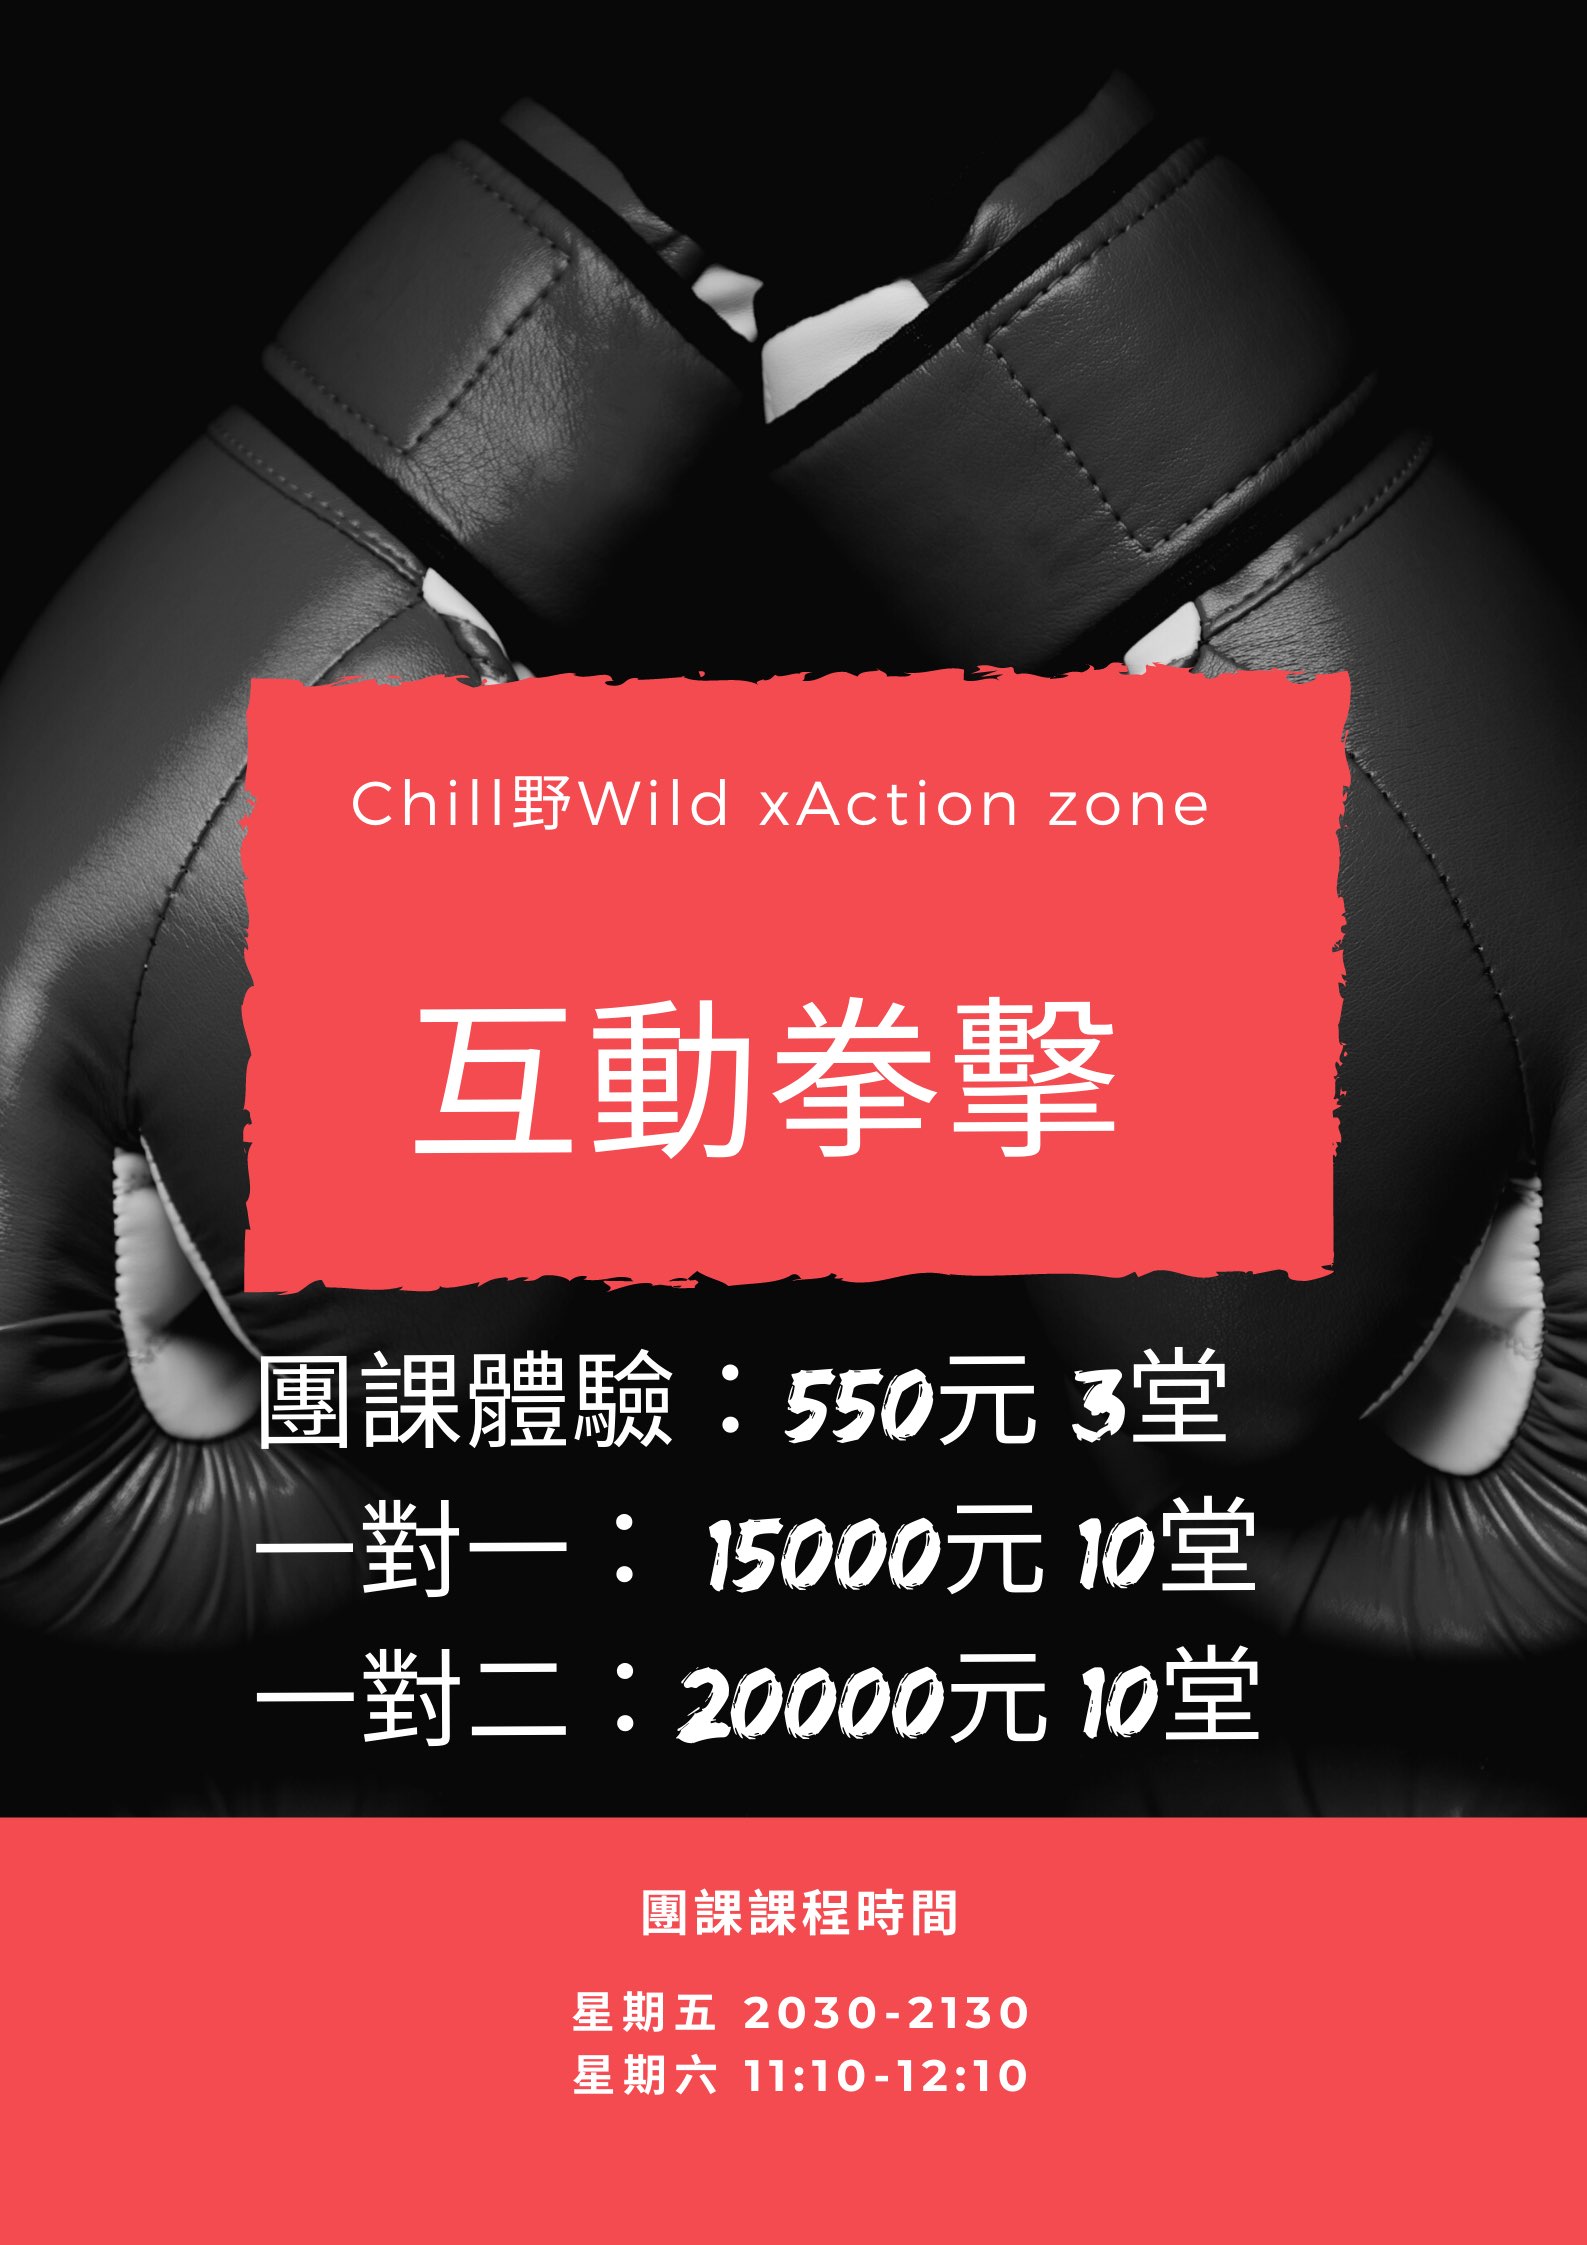 互動拳擊火熱開場 - Action zone X Chill野Wild